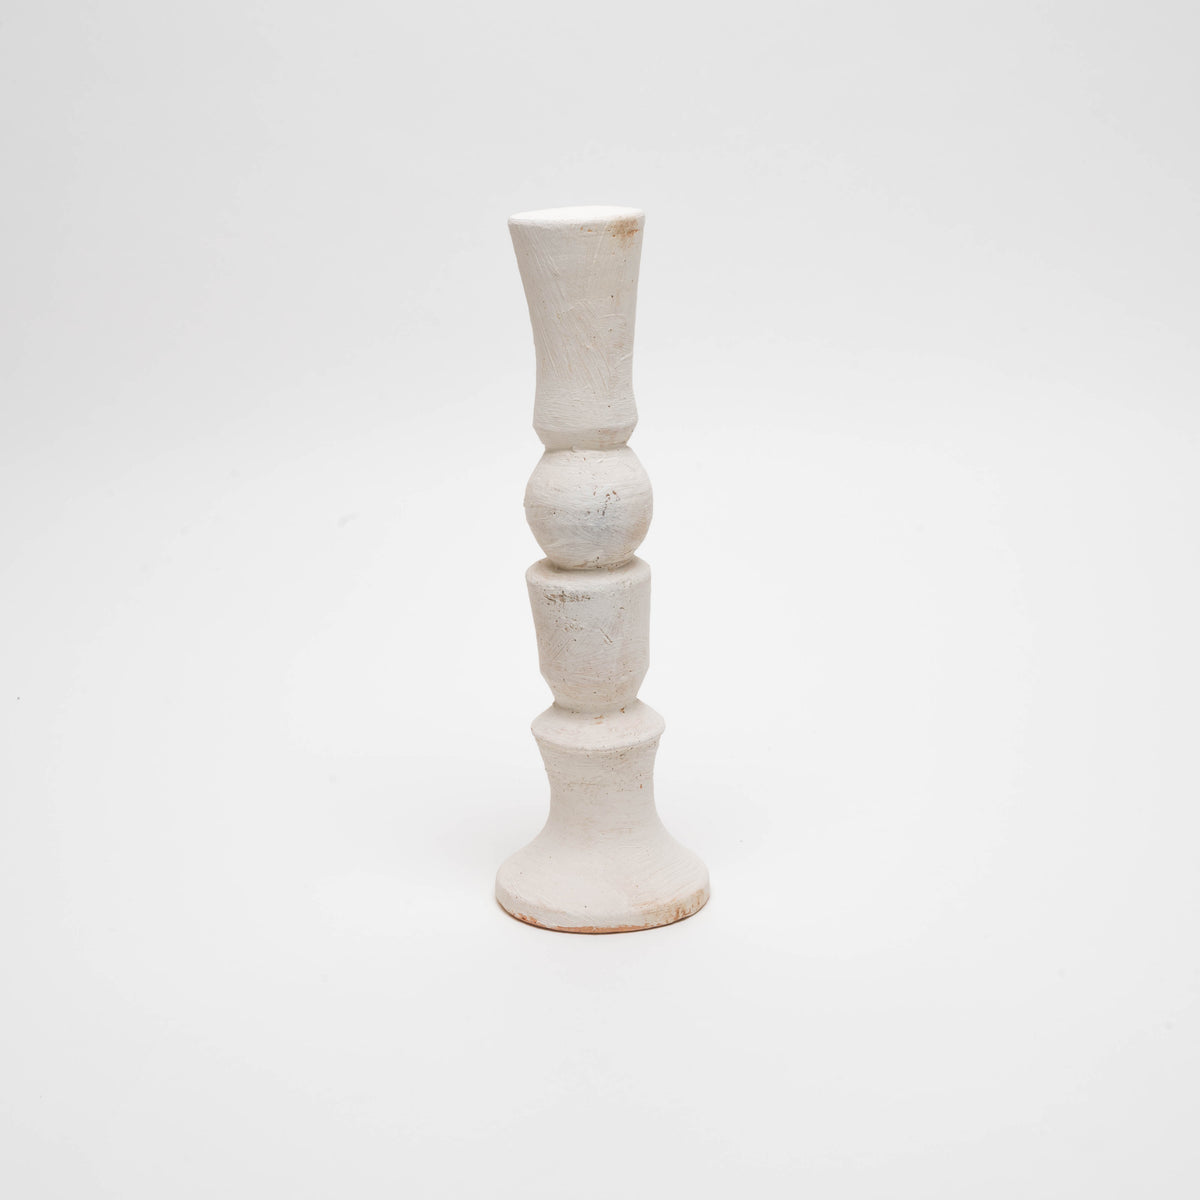 Stoneware candlestick, white, unique piece